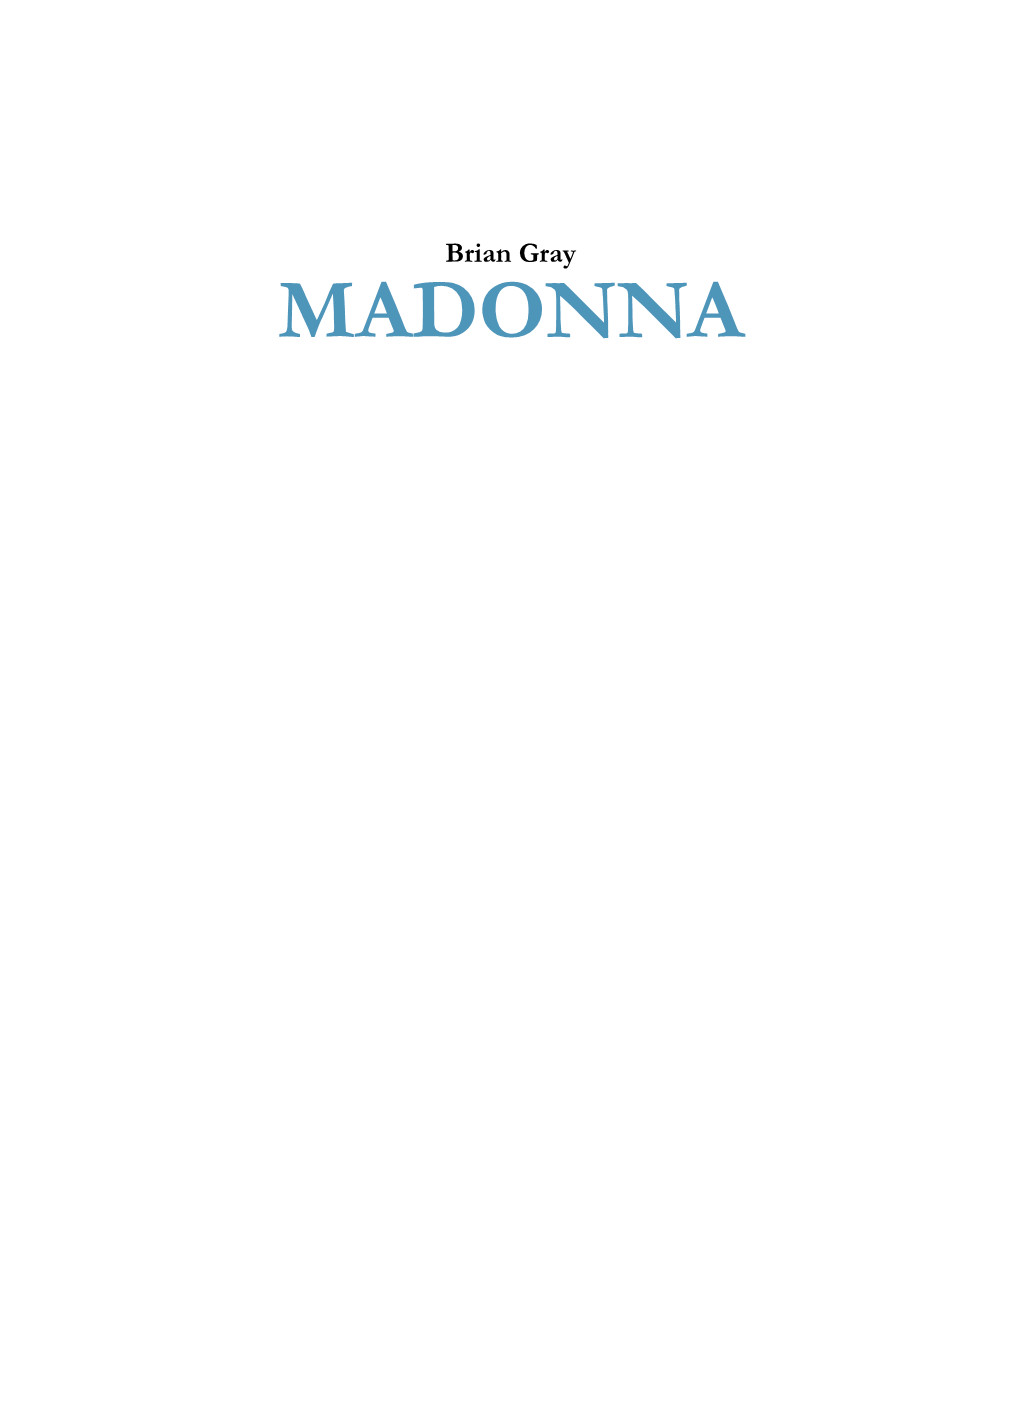 MADONNA a Fordítás Az Alábbi Kiadás Alapján Készült: Discovering the Zodiac in the Raphael Madonna Series